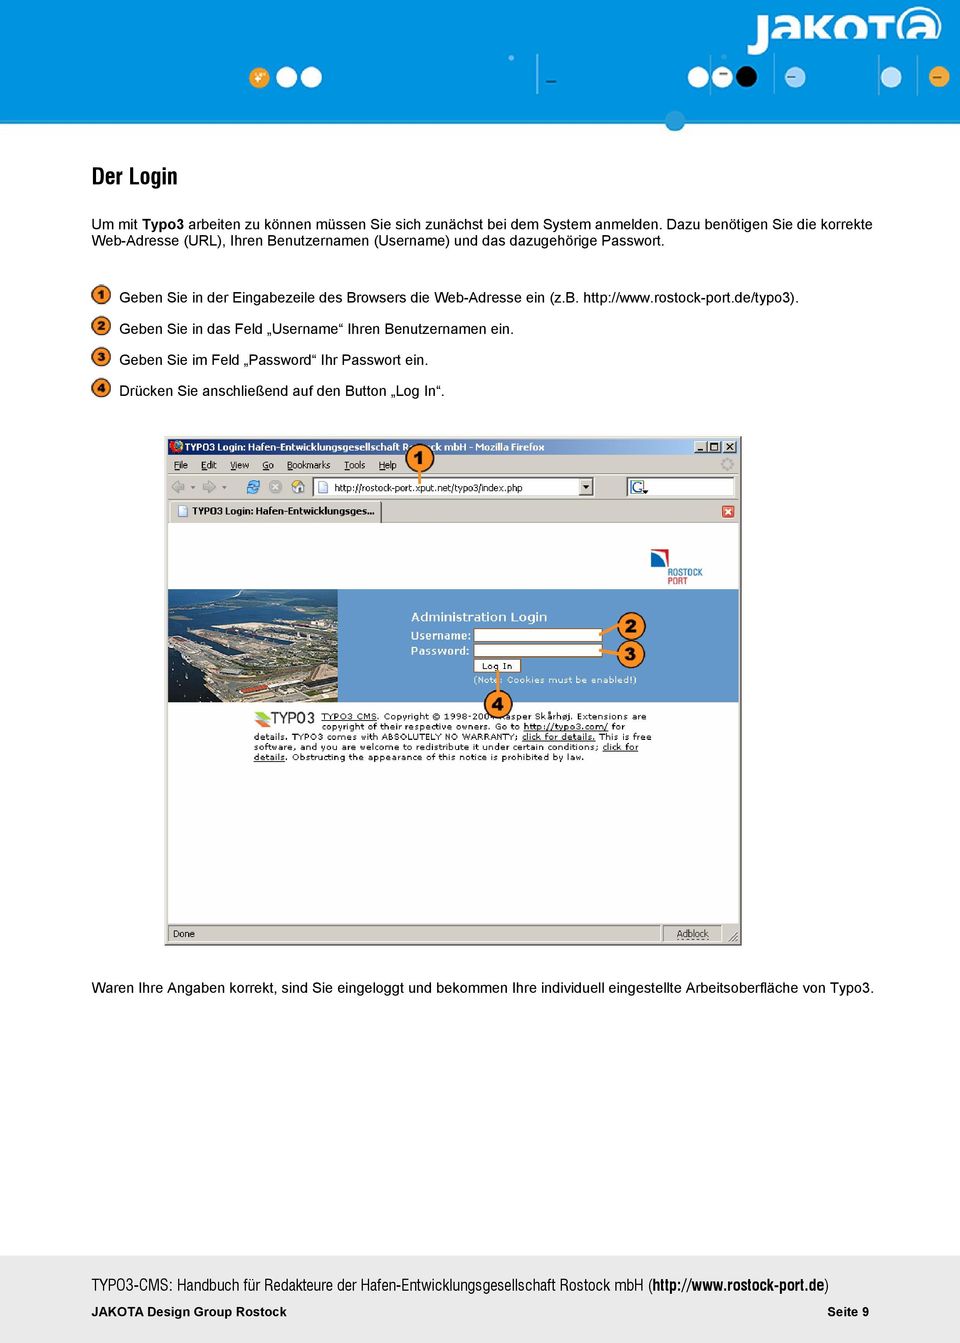 Geben Sie in der Eingabezeile des Browsers die Web-Adresse ein (z.b. http://www.rostock-port.de/typo3).